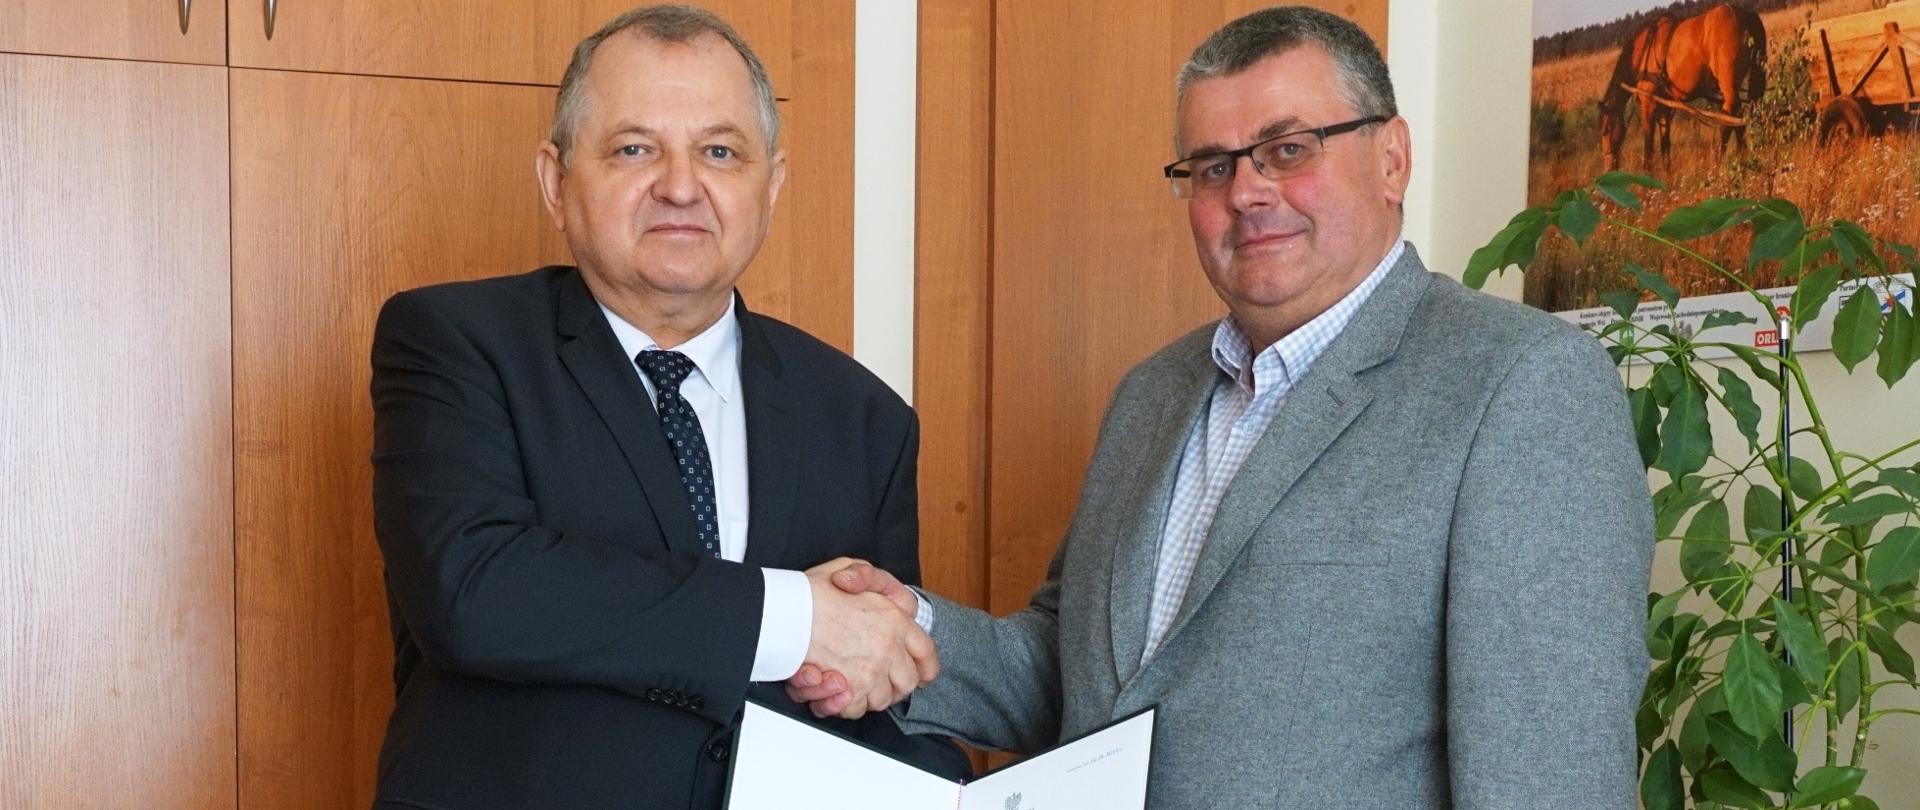 Podsekretarz stanu R. Zarudzki gratuluje zwycięzcy konkursu K Kowalskiemu